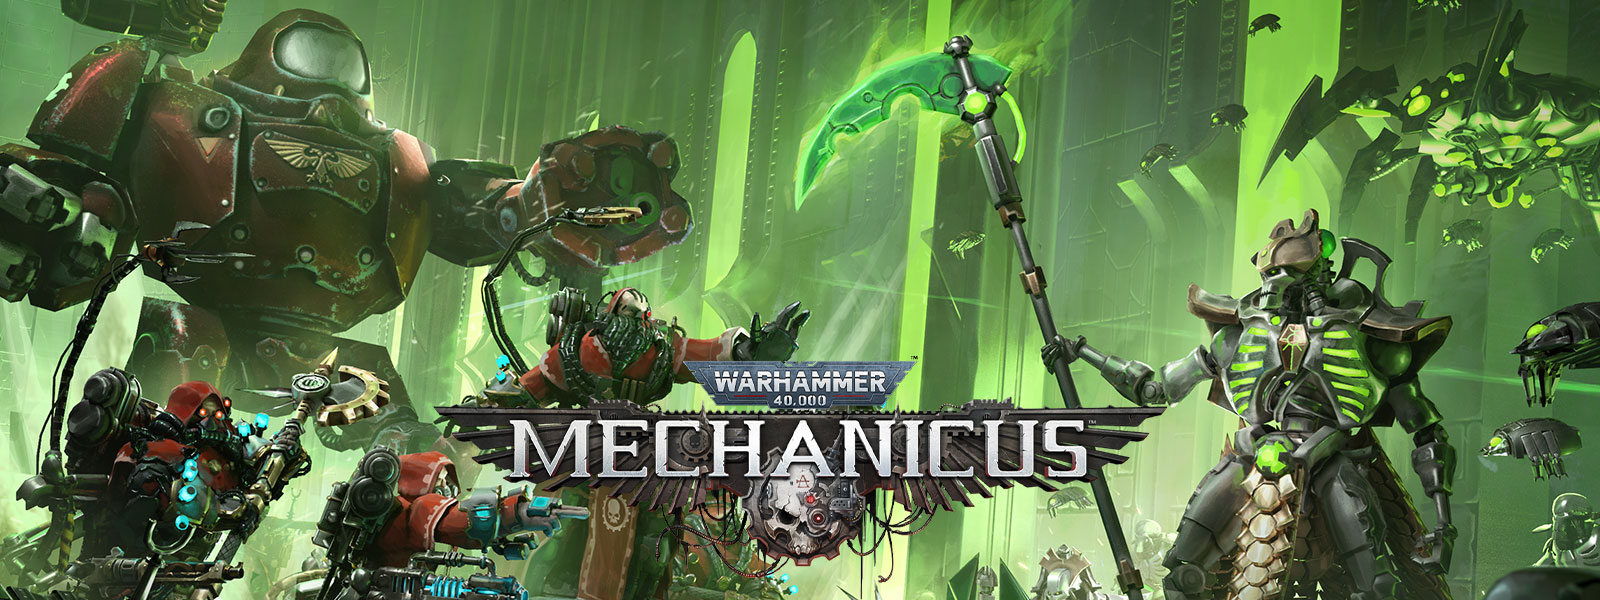 Warhammer 40,000: Mechanicus, Twee high-tech legers ontmoeten elkaar voor de strijd.